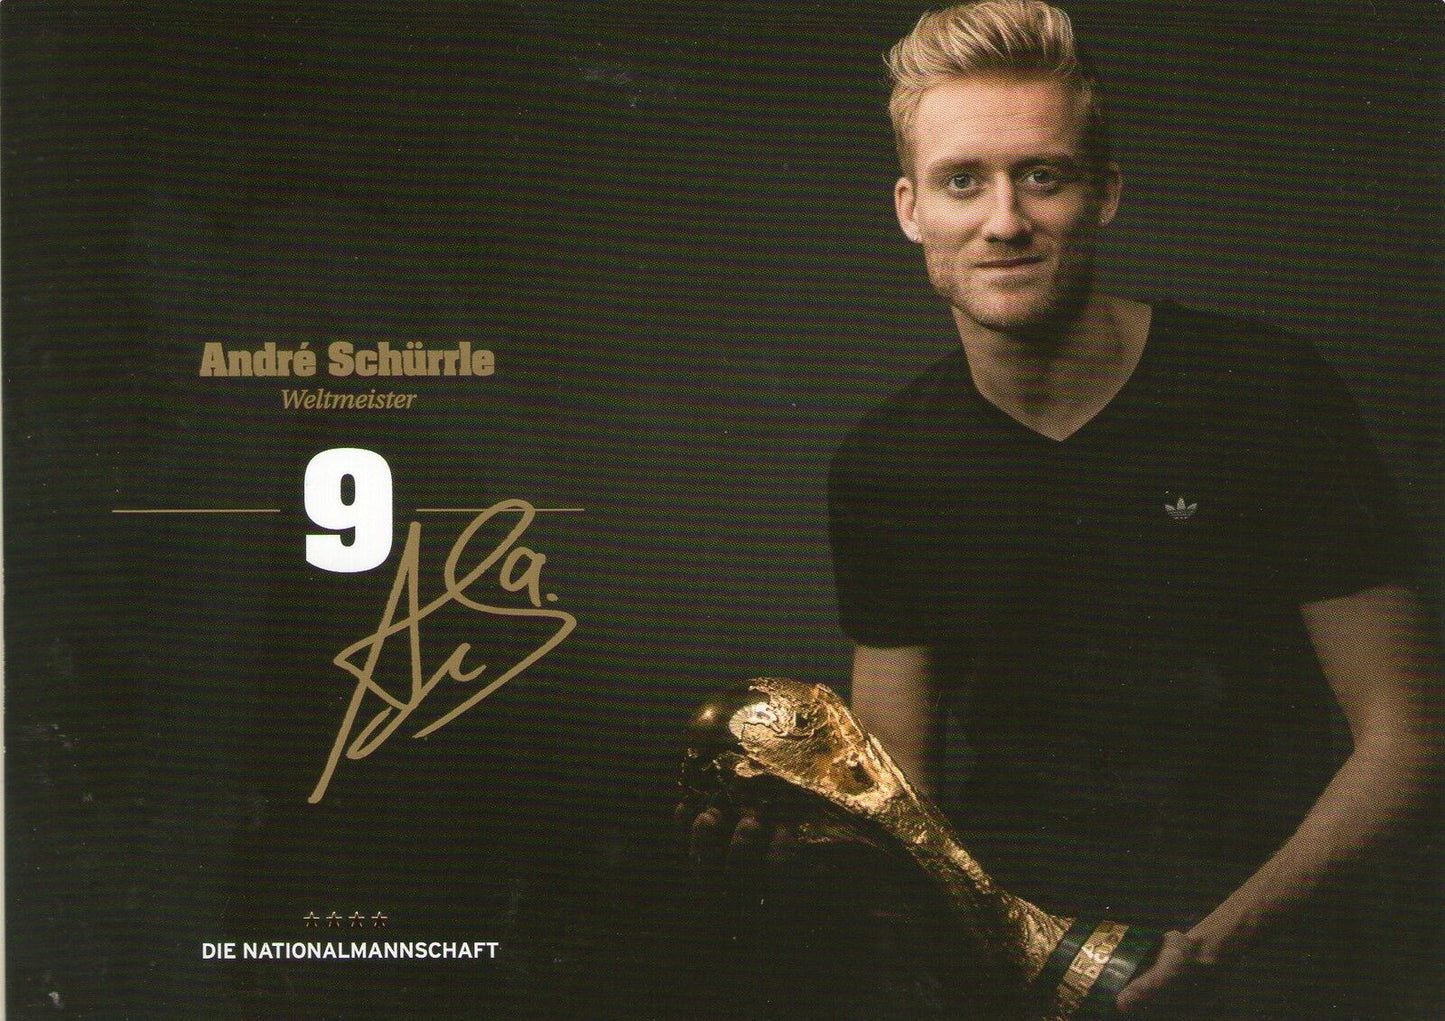 Limitierte Edition DFB Autogrammkarte! Andre Schürrle!! Signiert !RAR! GOLD